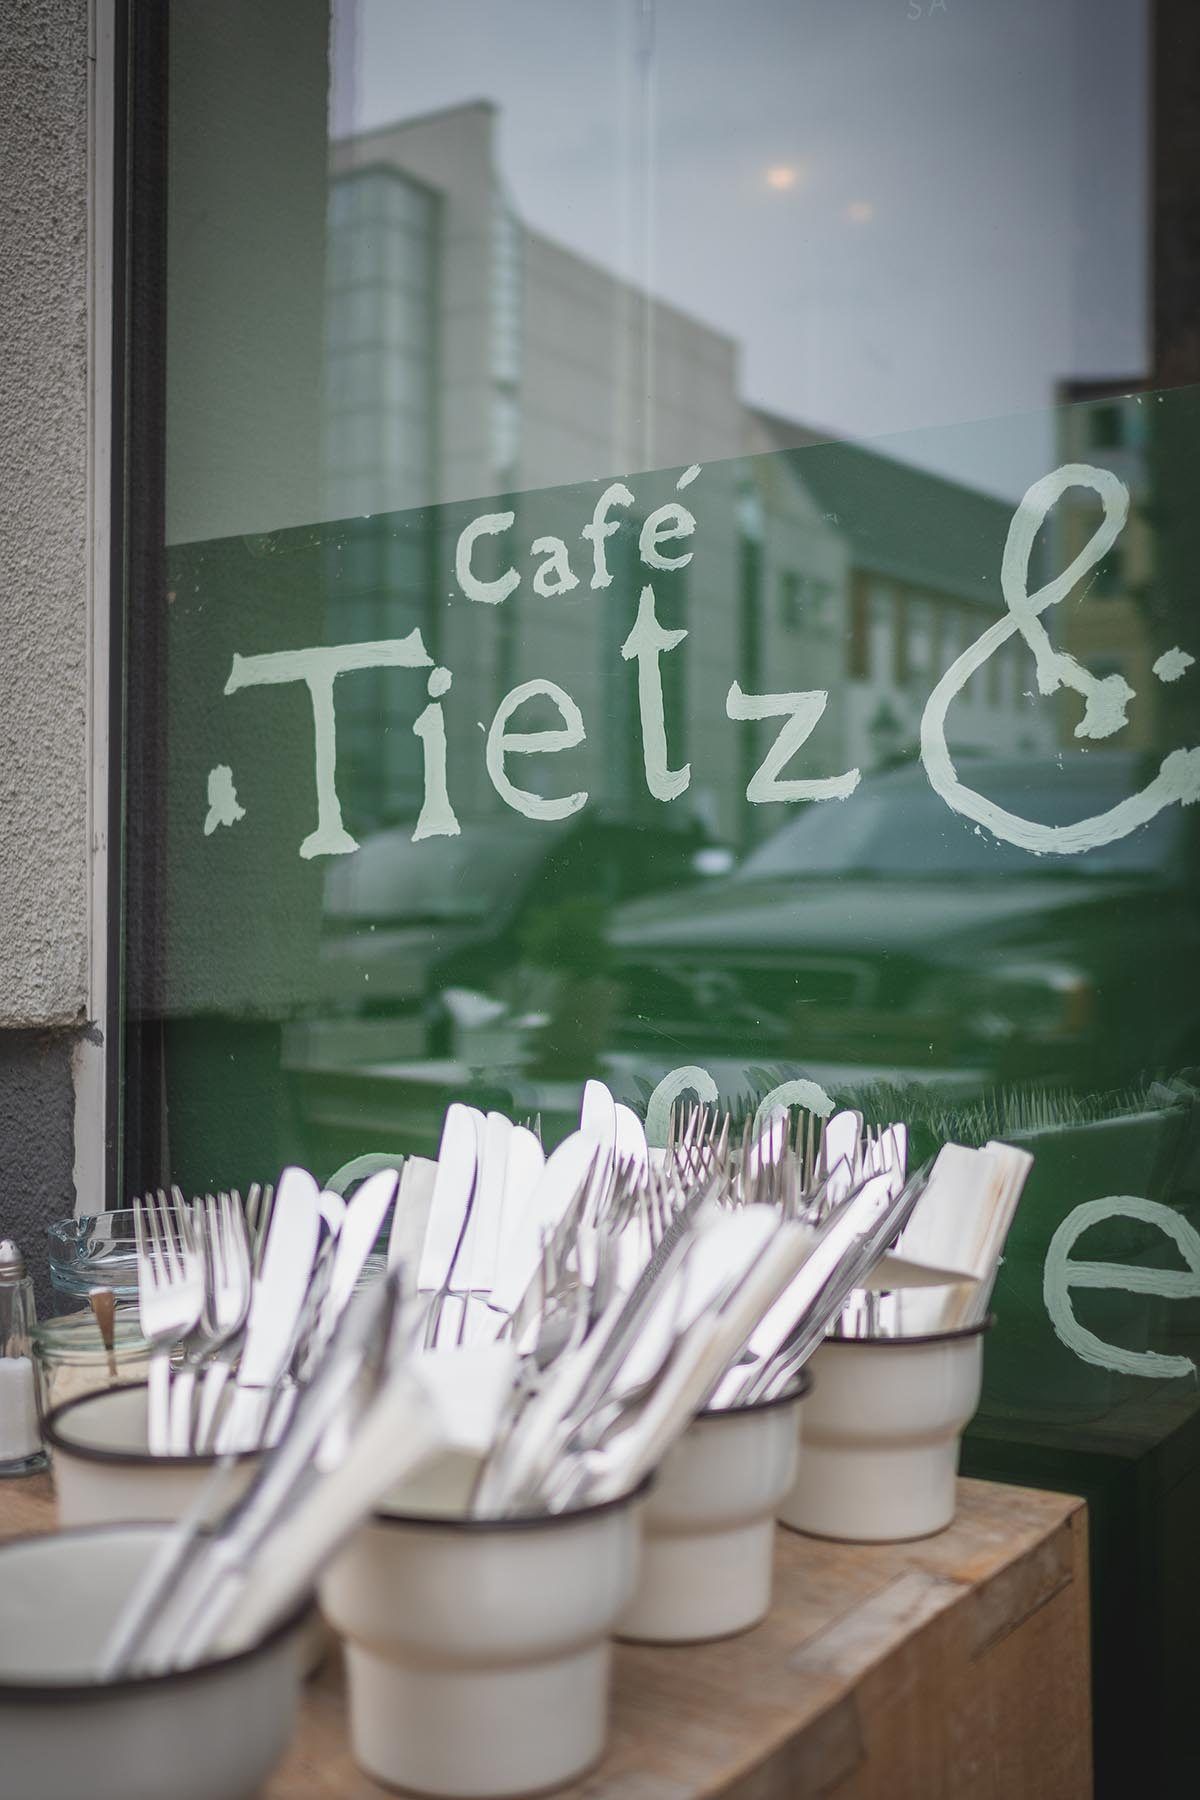 Café Tietz